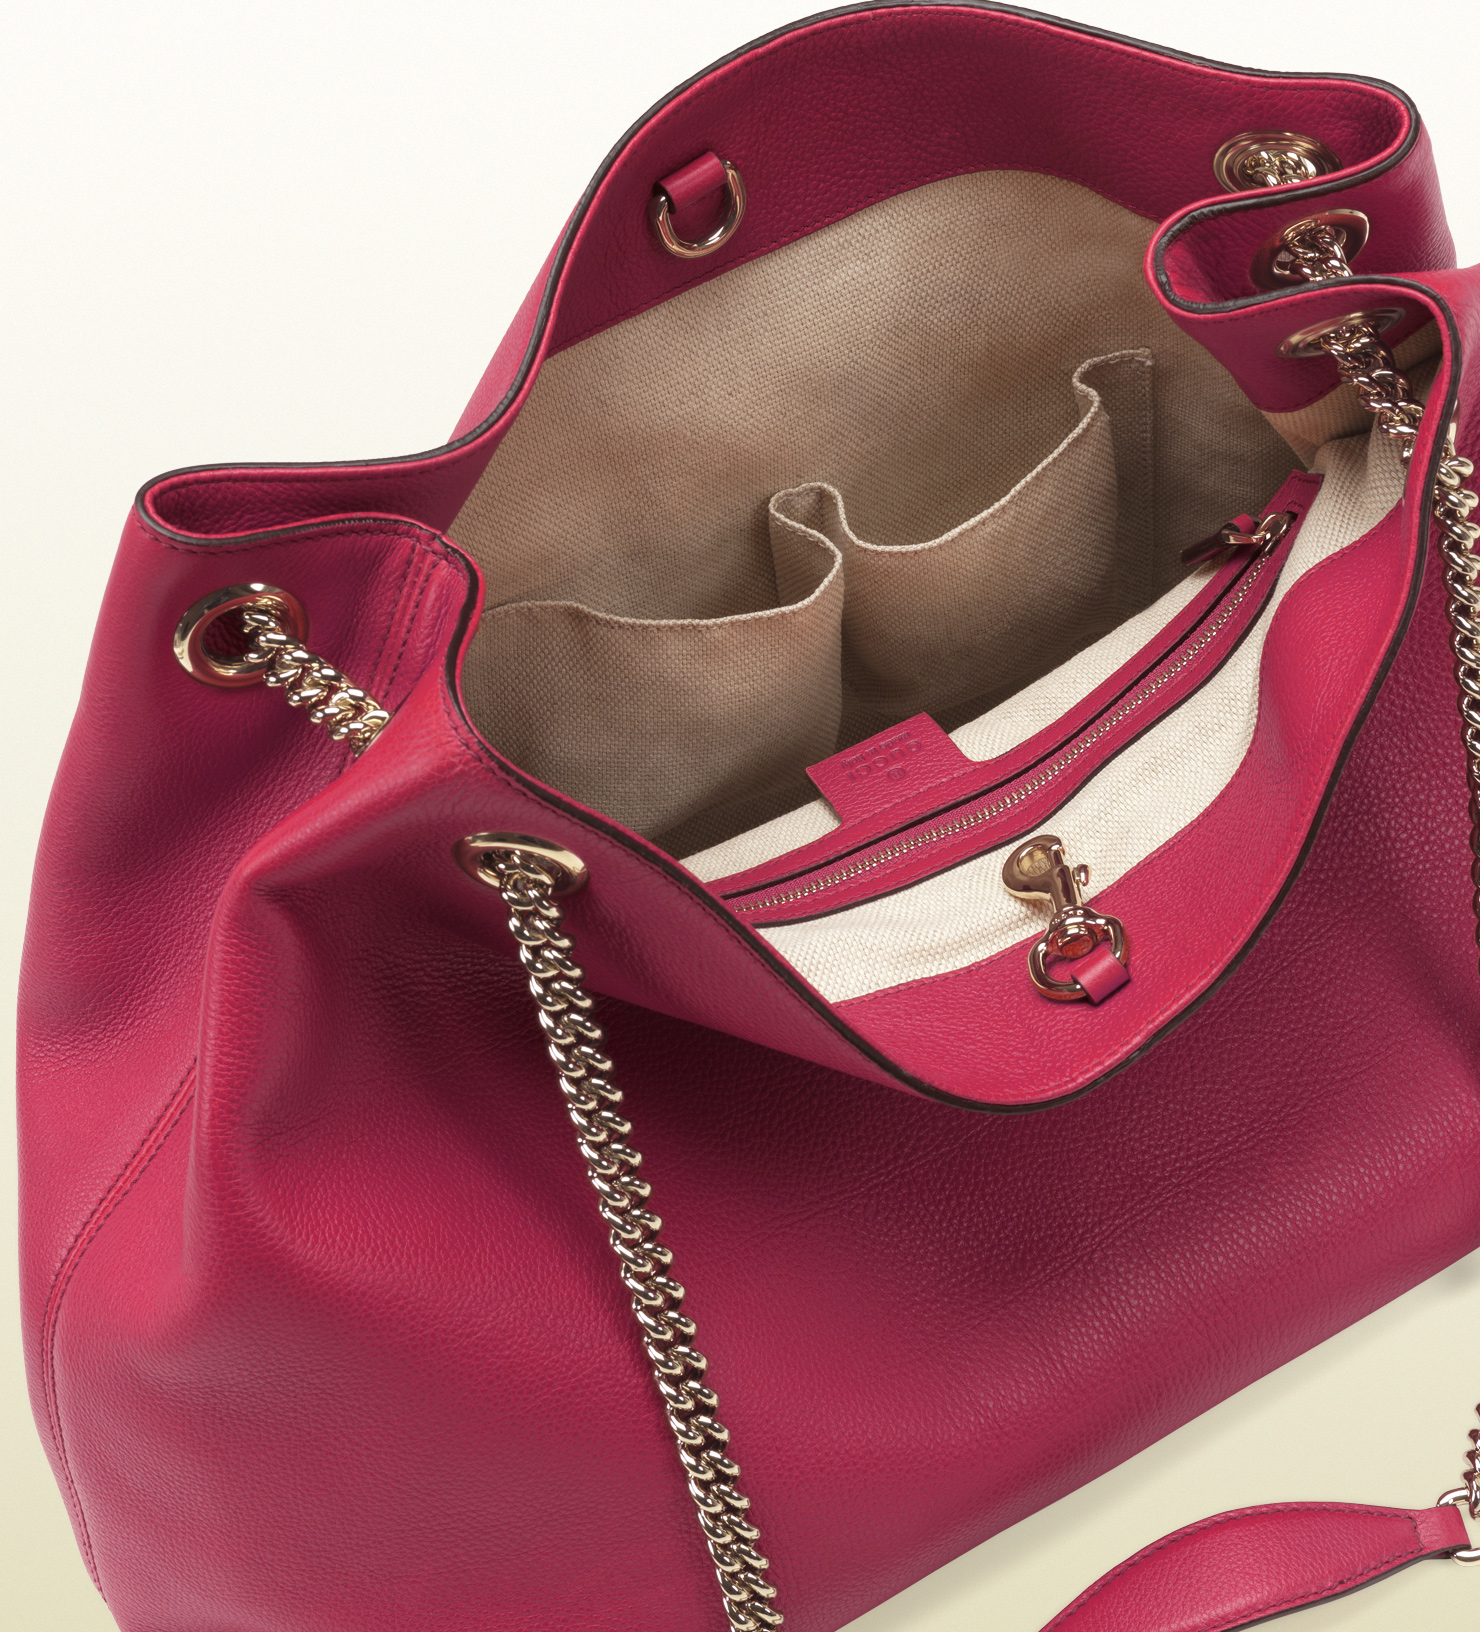 Lyst - Gucci Soho Shocking Pink Leather Shoulder Bag in Pink